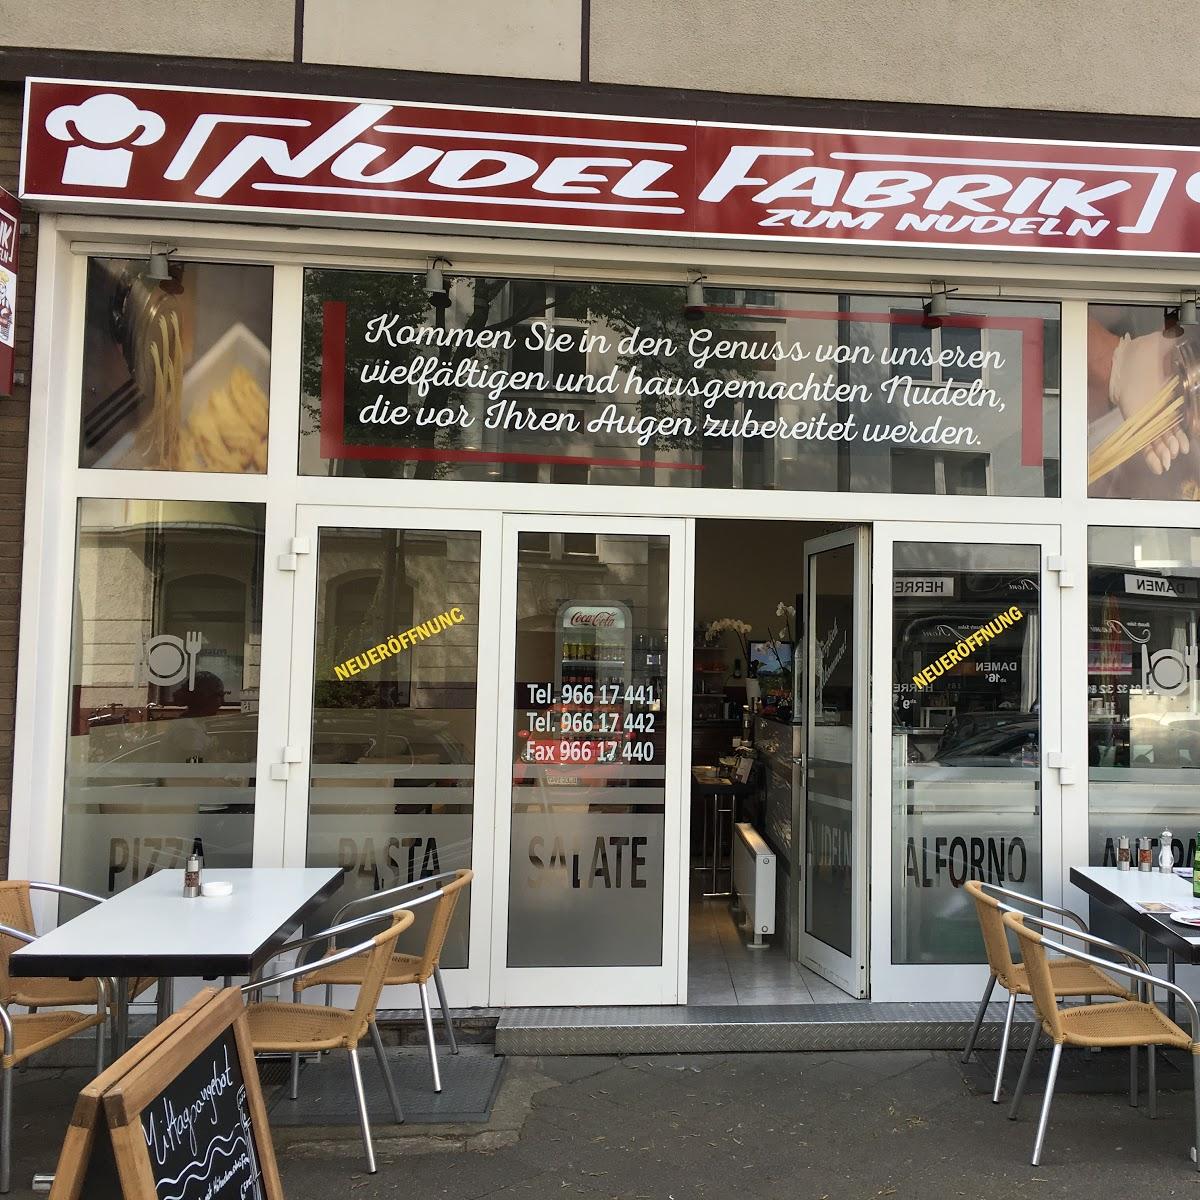 Restaurant "Nudelfabrik Zum Nudeln in Flingern-früher auf der ackerstrasse" in Düsseldorf